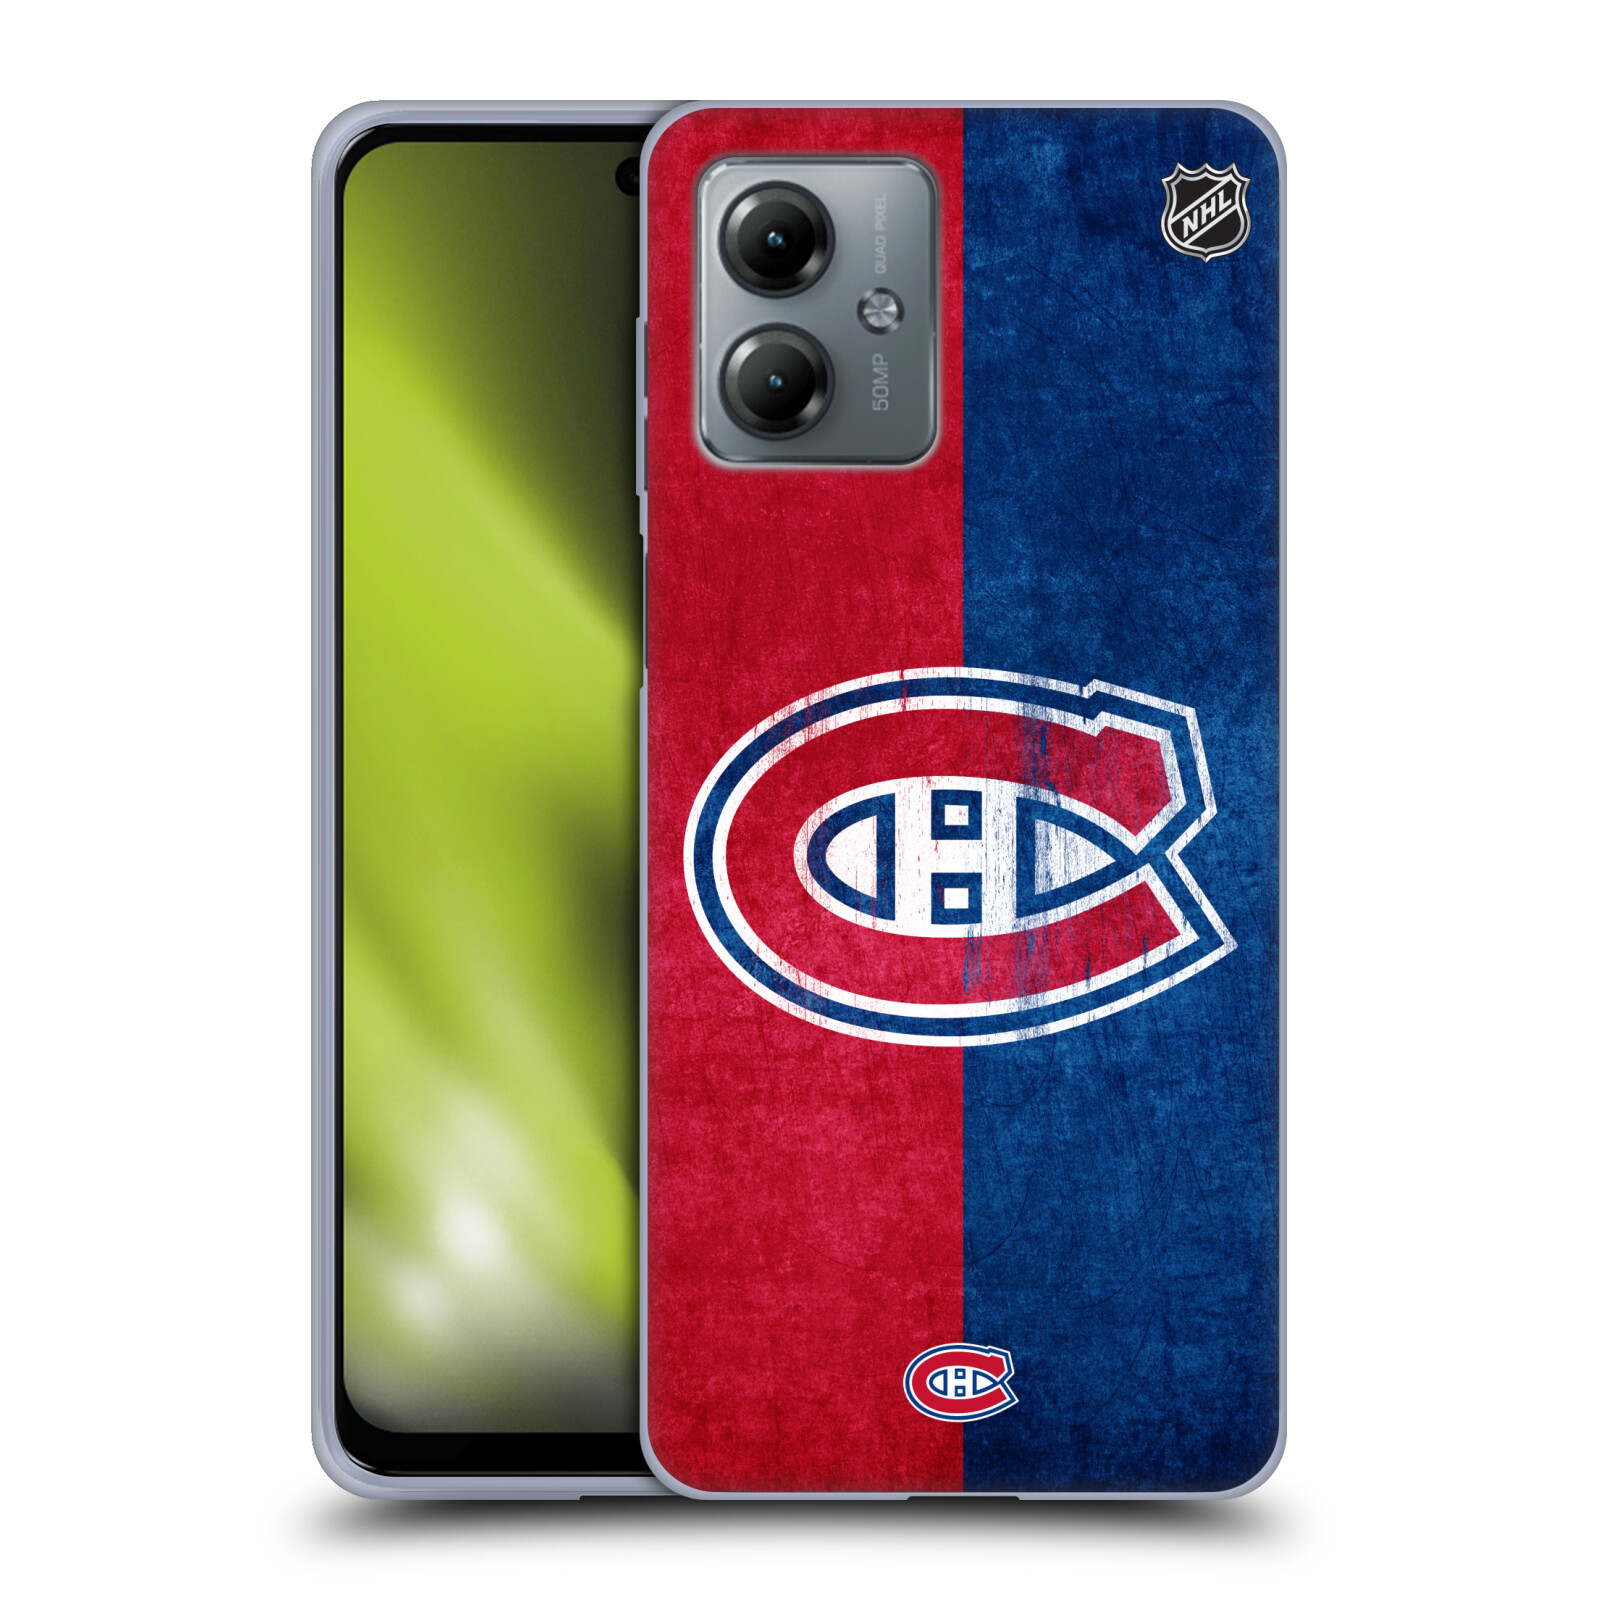 Silikonové pouzdro na mobil Motorola Moto G14 - NHL - Půlené logo Montreal Canadiens (Silikonový kryt, obal, pouzdro na mobilní telefon Motorola Moto G14 s licencovaným motivem NHL - Půlené logo Montreal Canadiens)